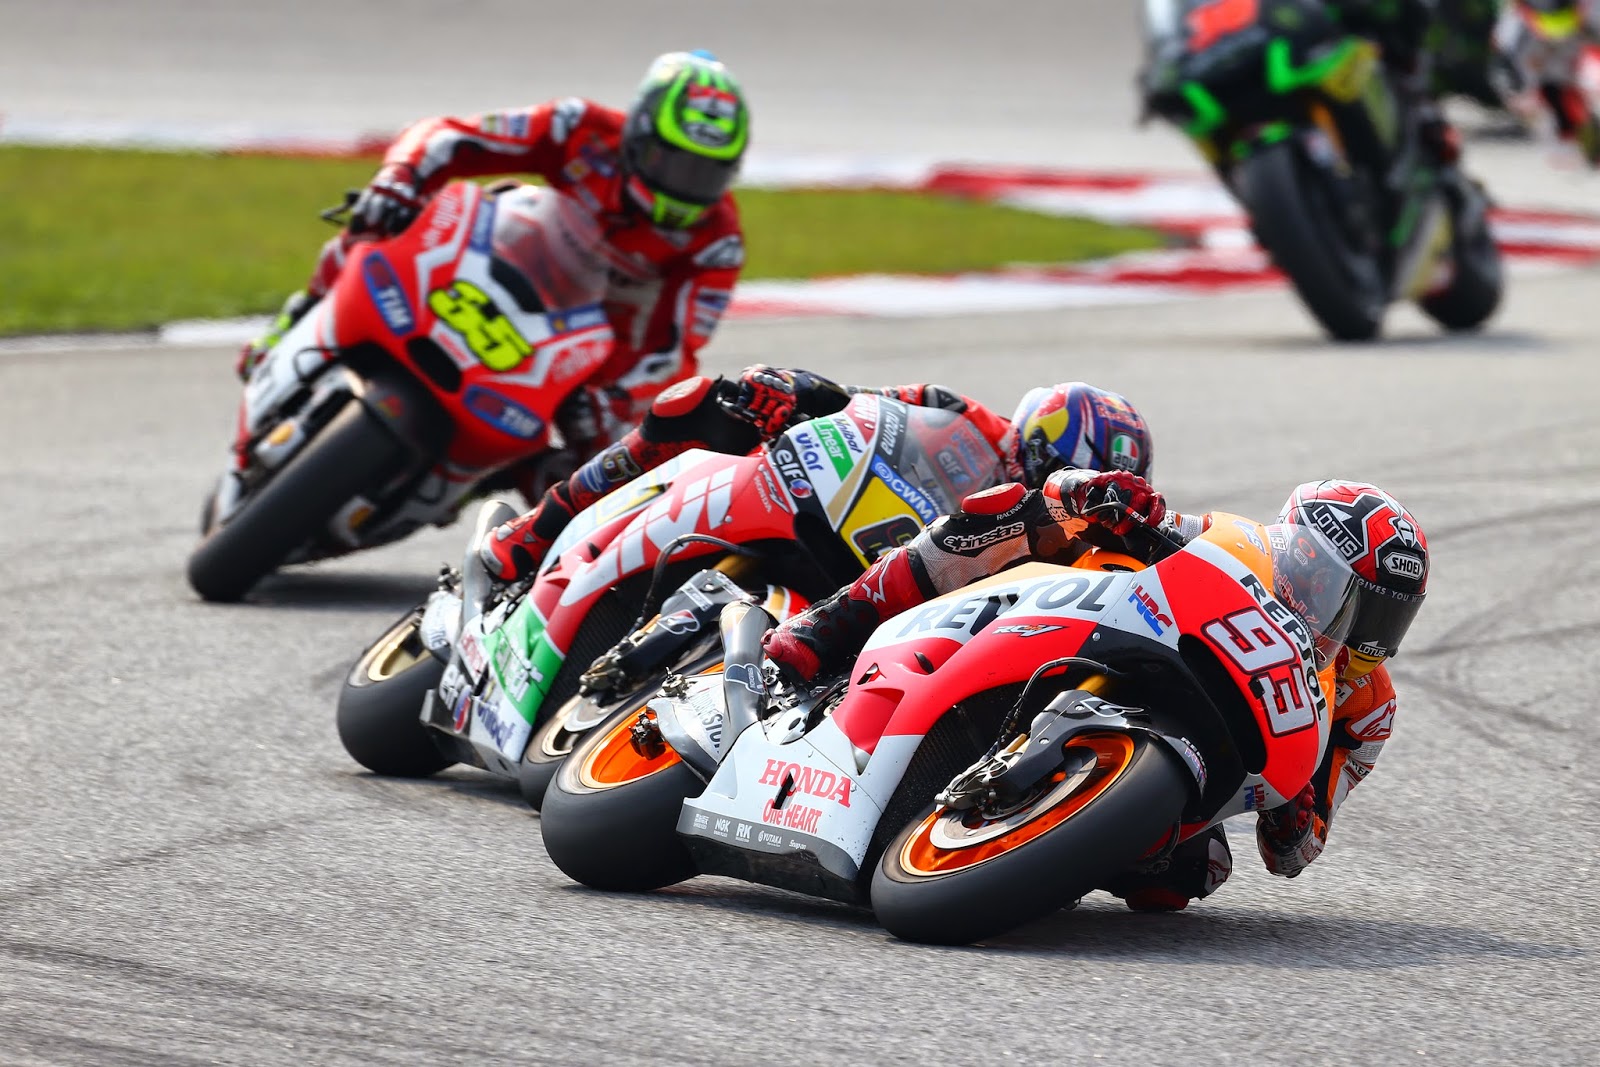 12η νίκη για τον Marquez στη Μαλαισία και εξασφάλιση του Πρωταθλήματος Κατασκευαστών για τη Honda - Φωτογραφία 1